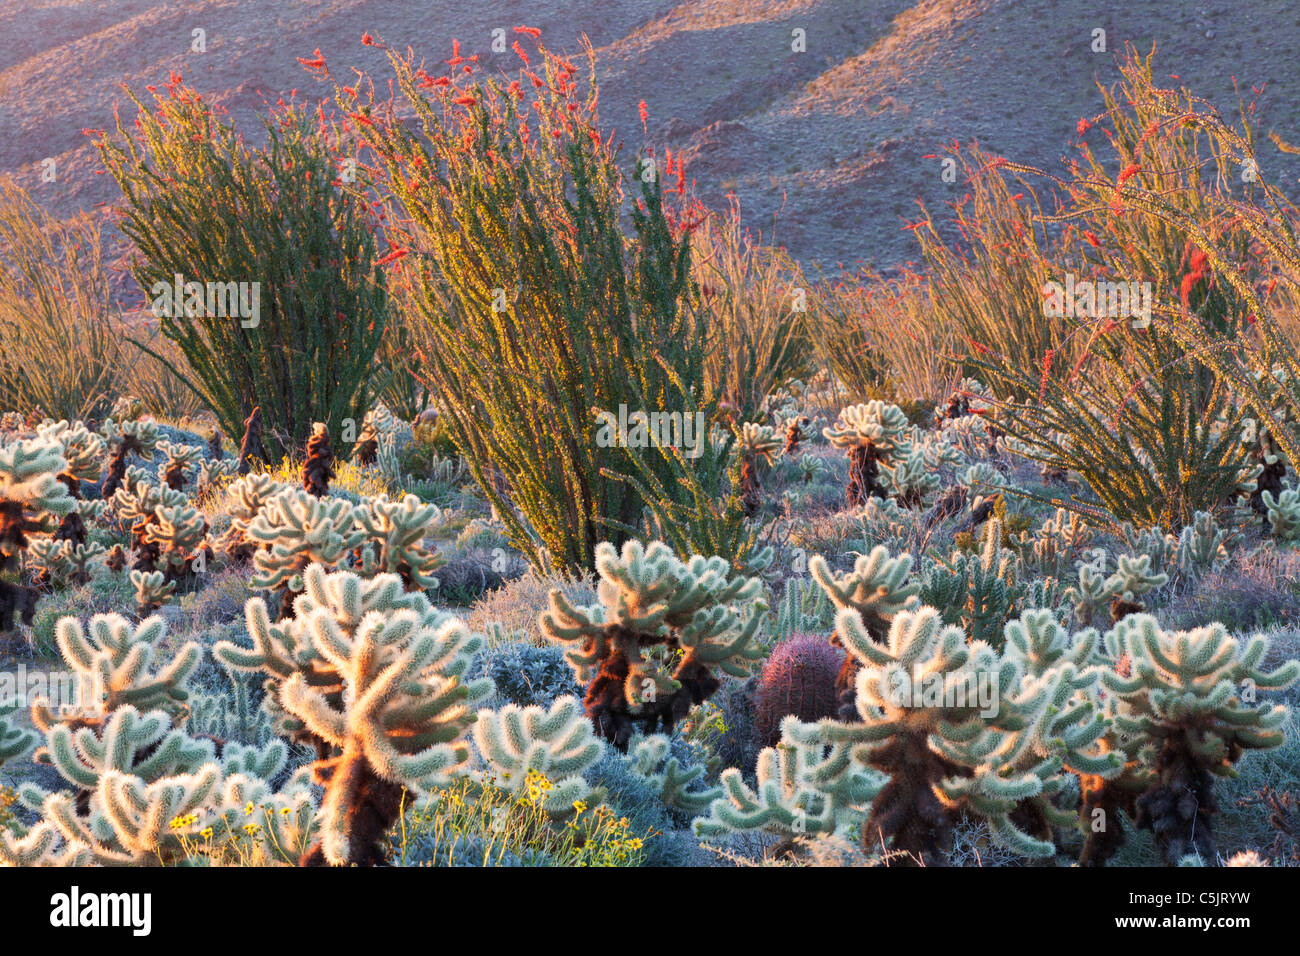 Cactus garden, Anza-Borrego Desert State Park, California. Stock Photo